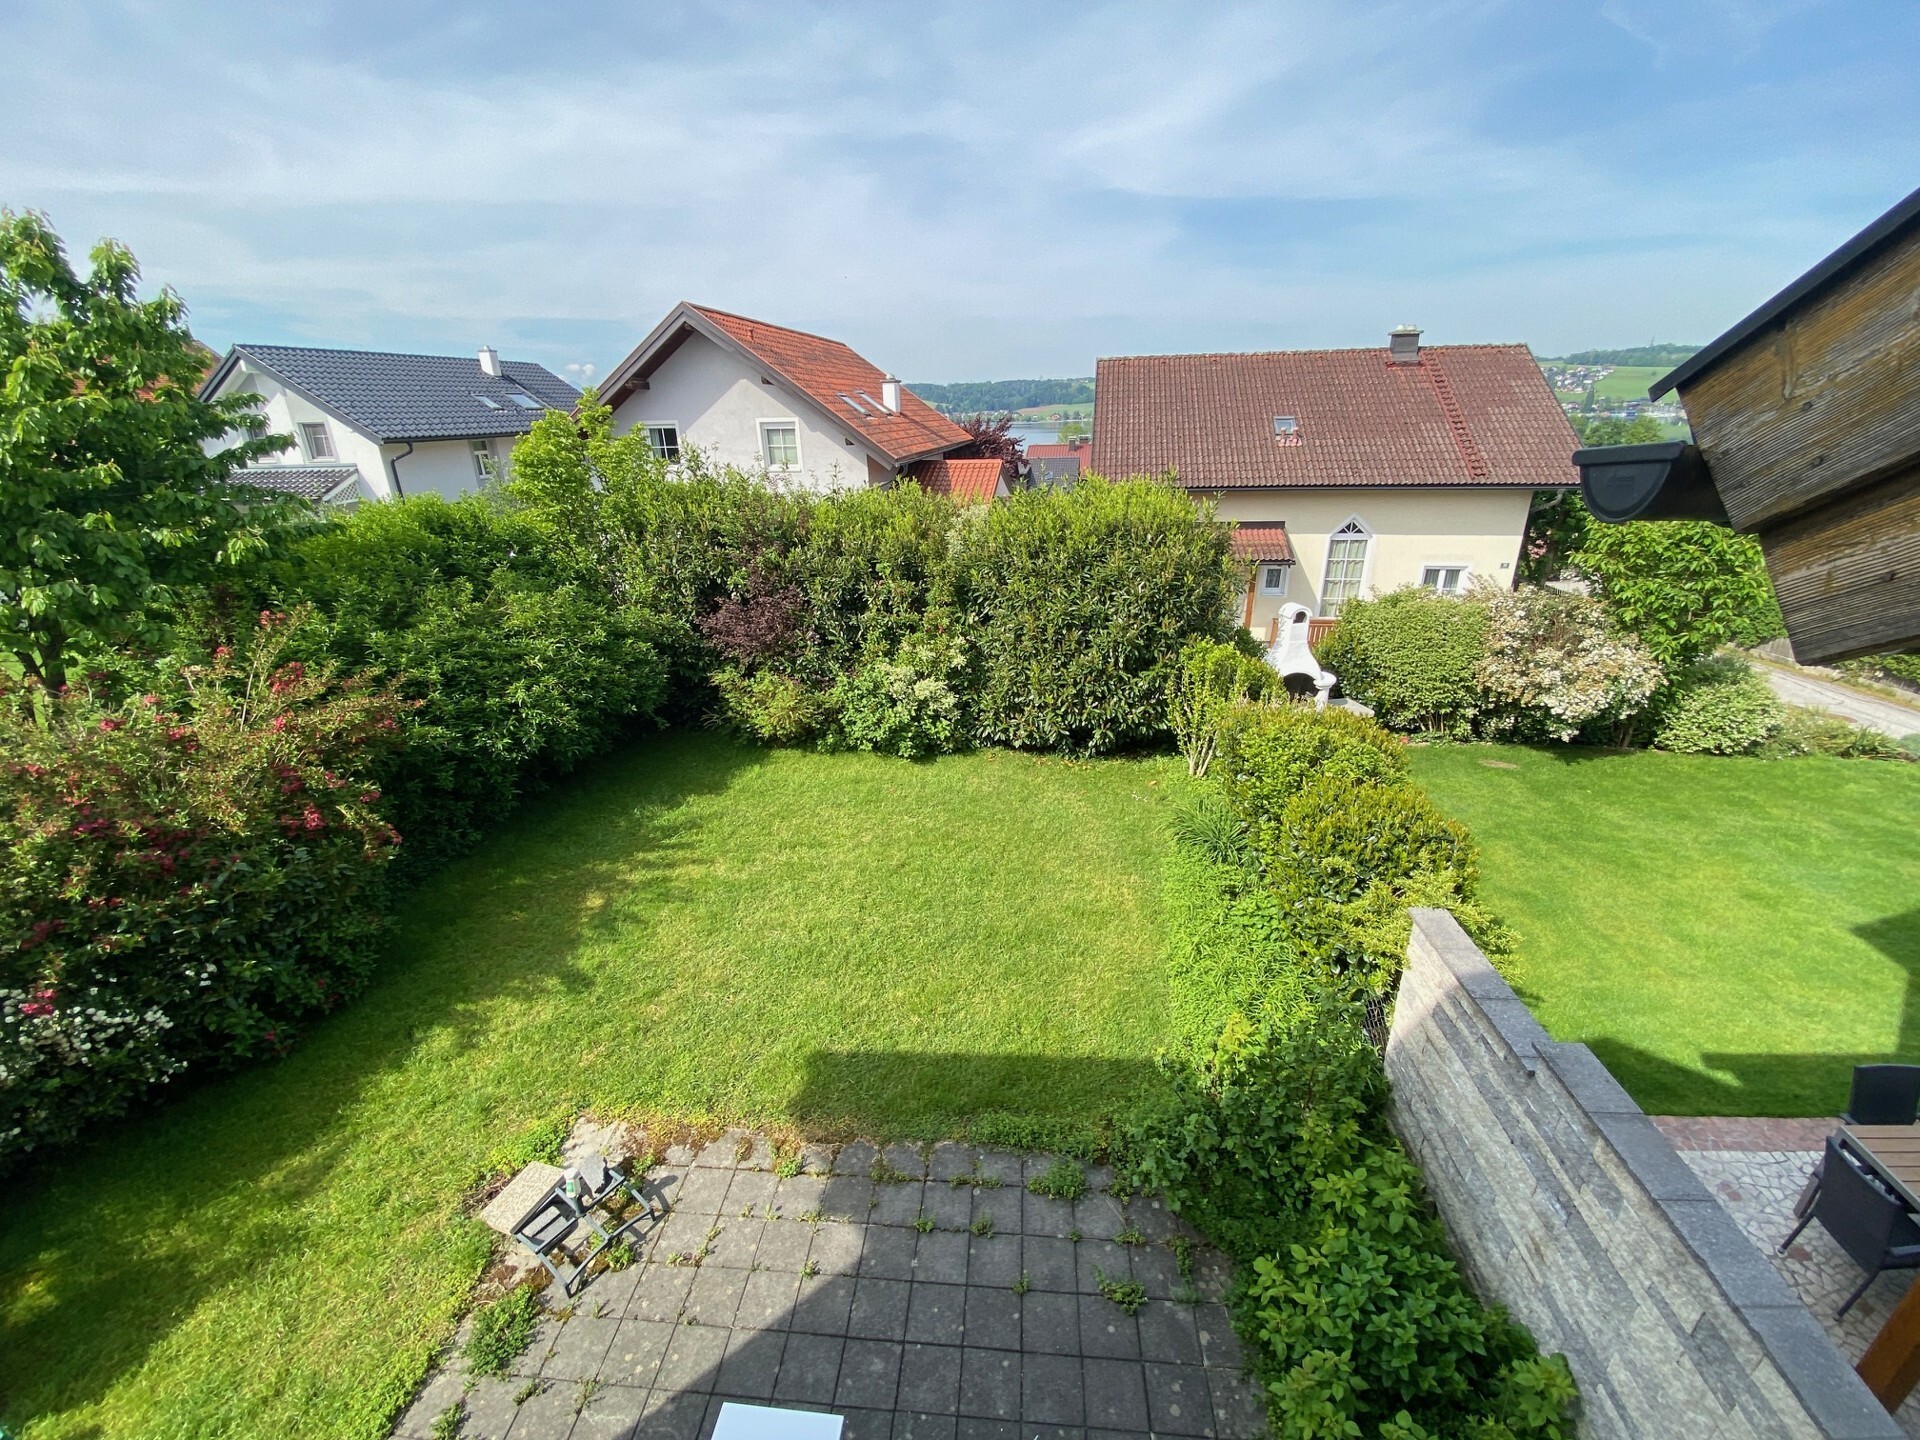 4 Zimmer - Doppelhaushälfte mit Balkon, Terrasse und Garten in Mattsee 5163 zu kaufen